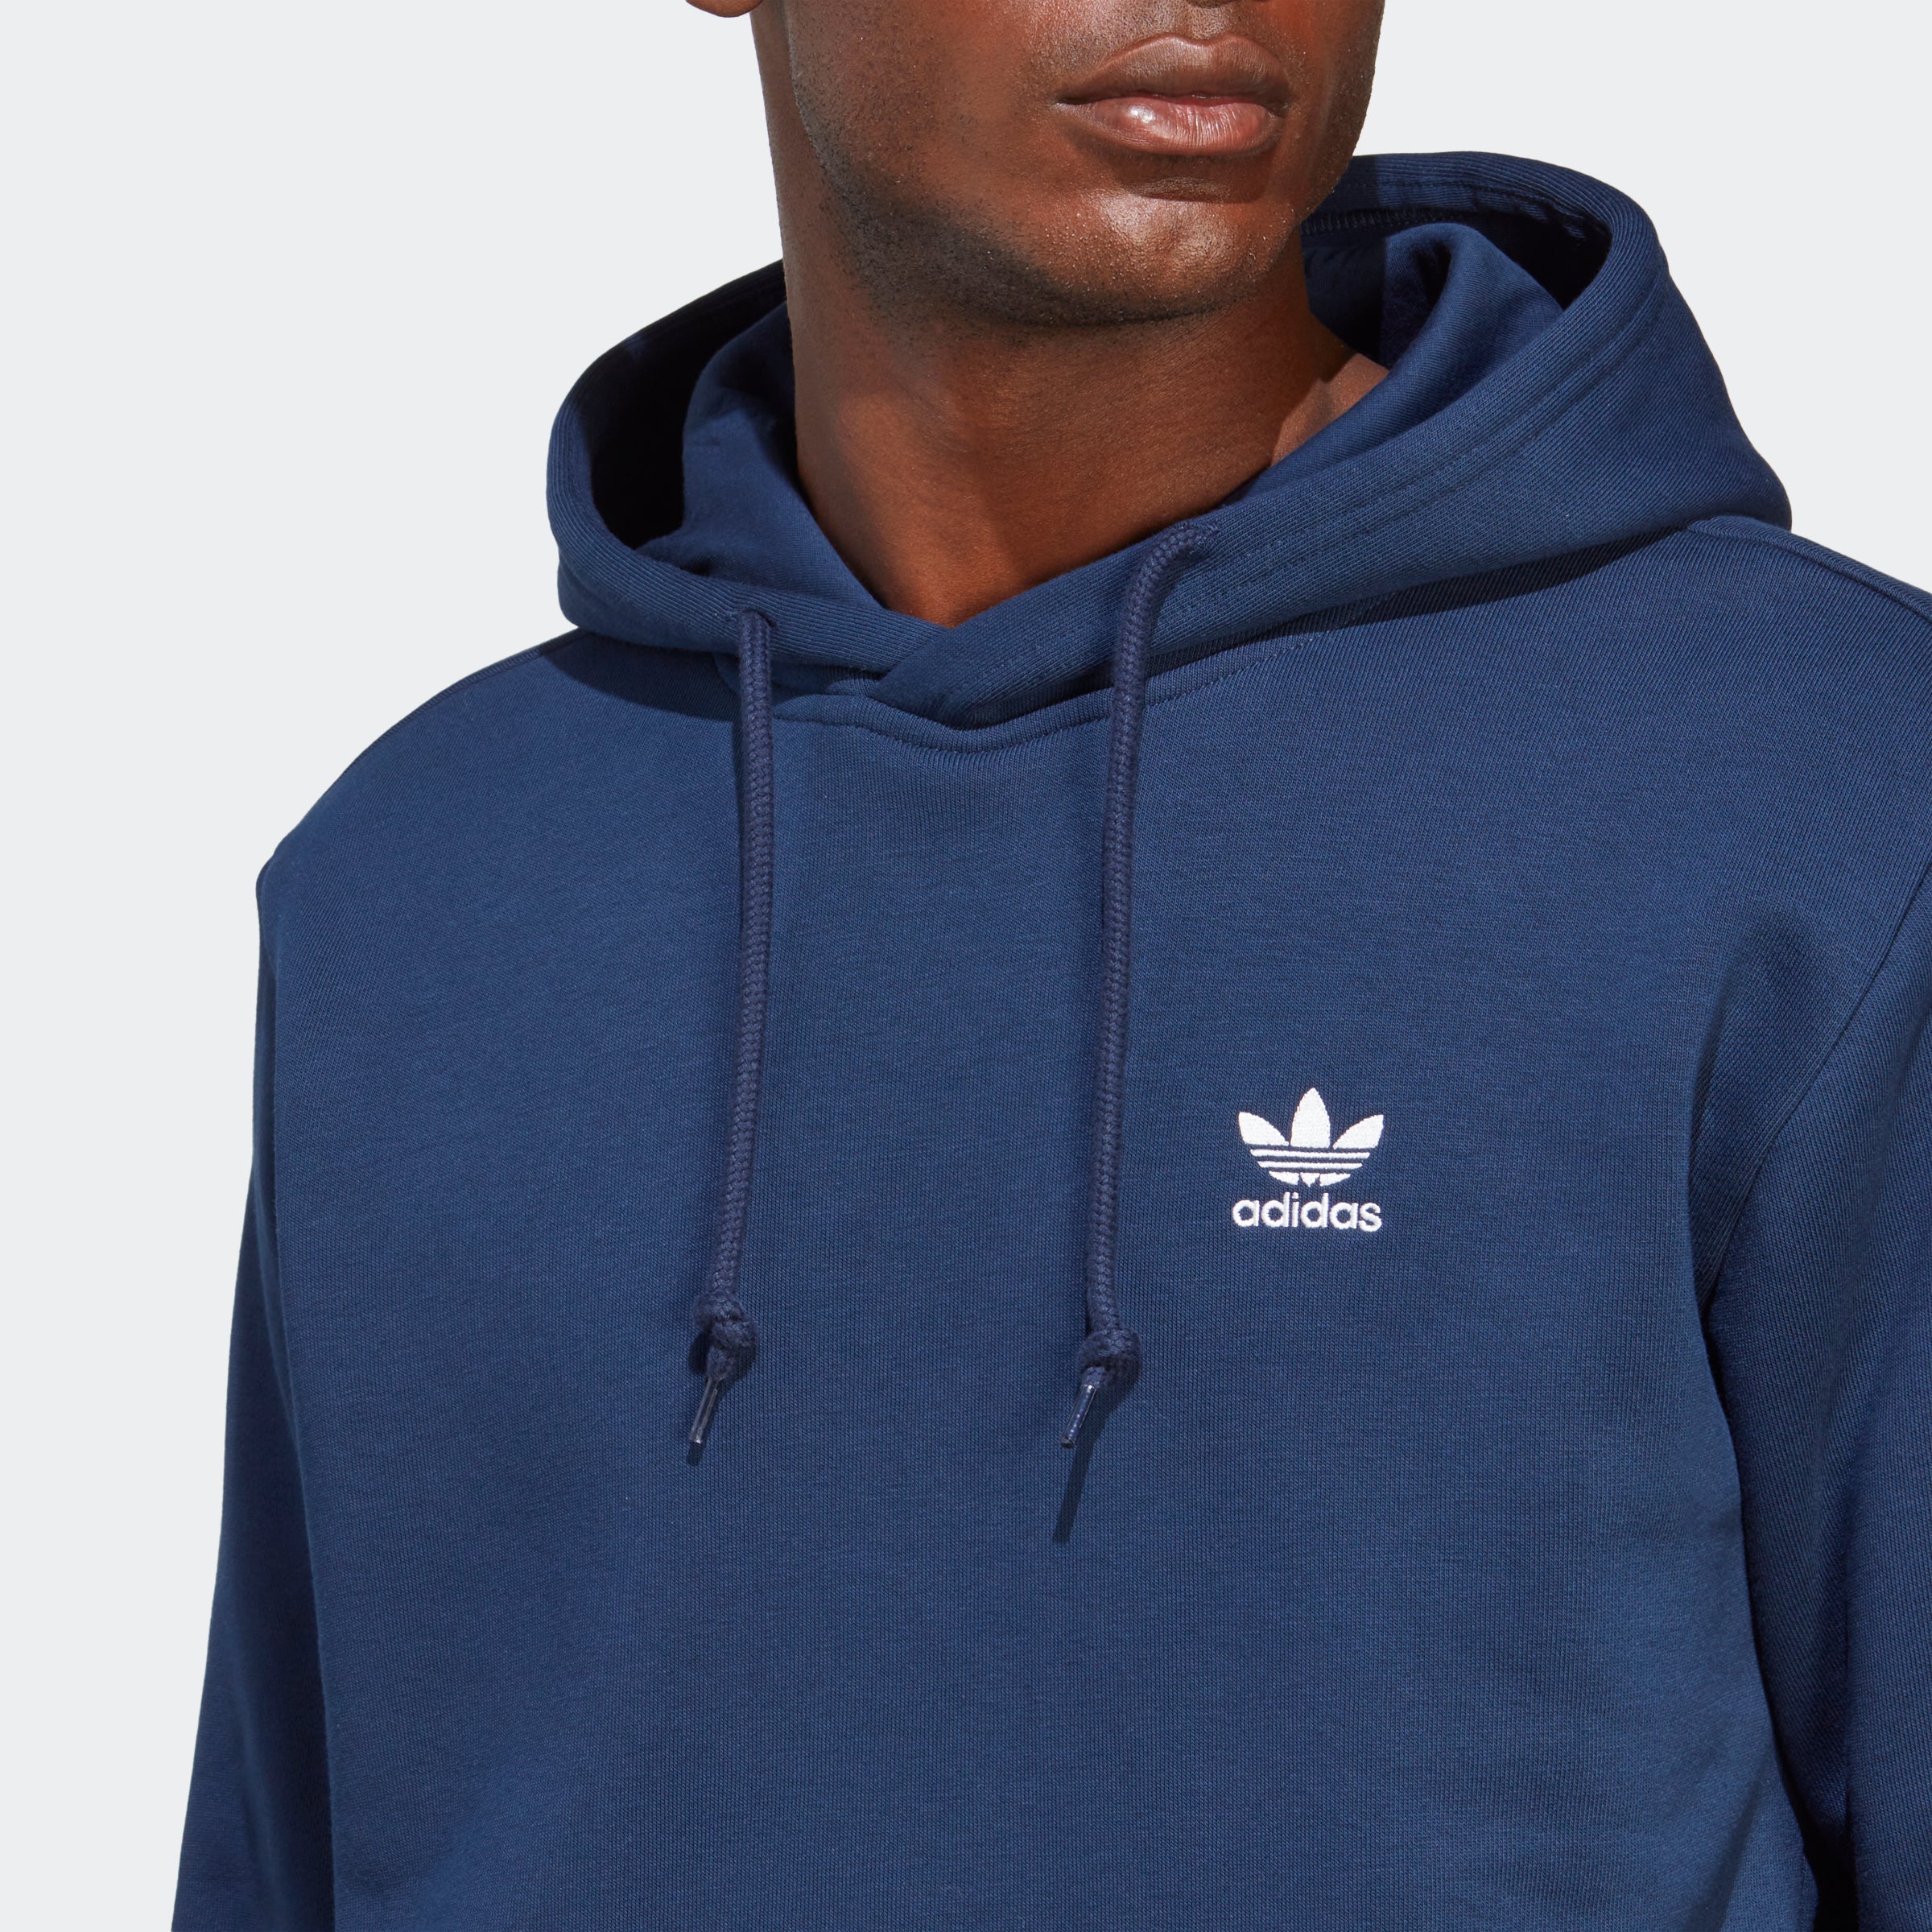 Adidas Originals Men's Monogram Hoodie Collegiate Navy/White